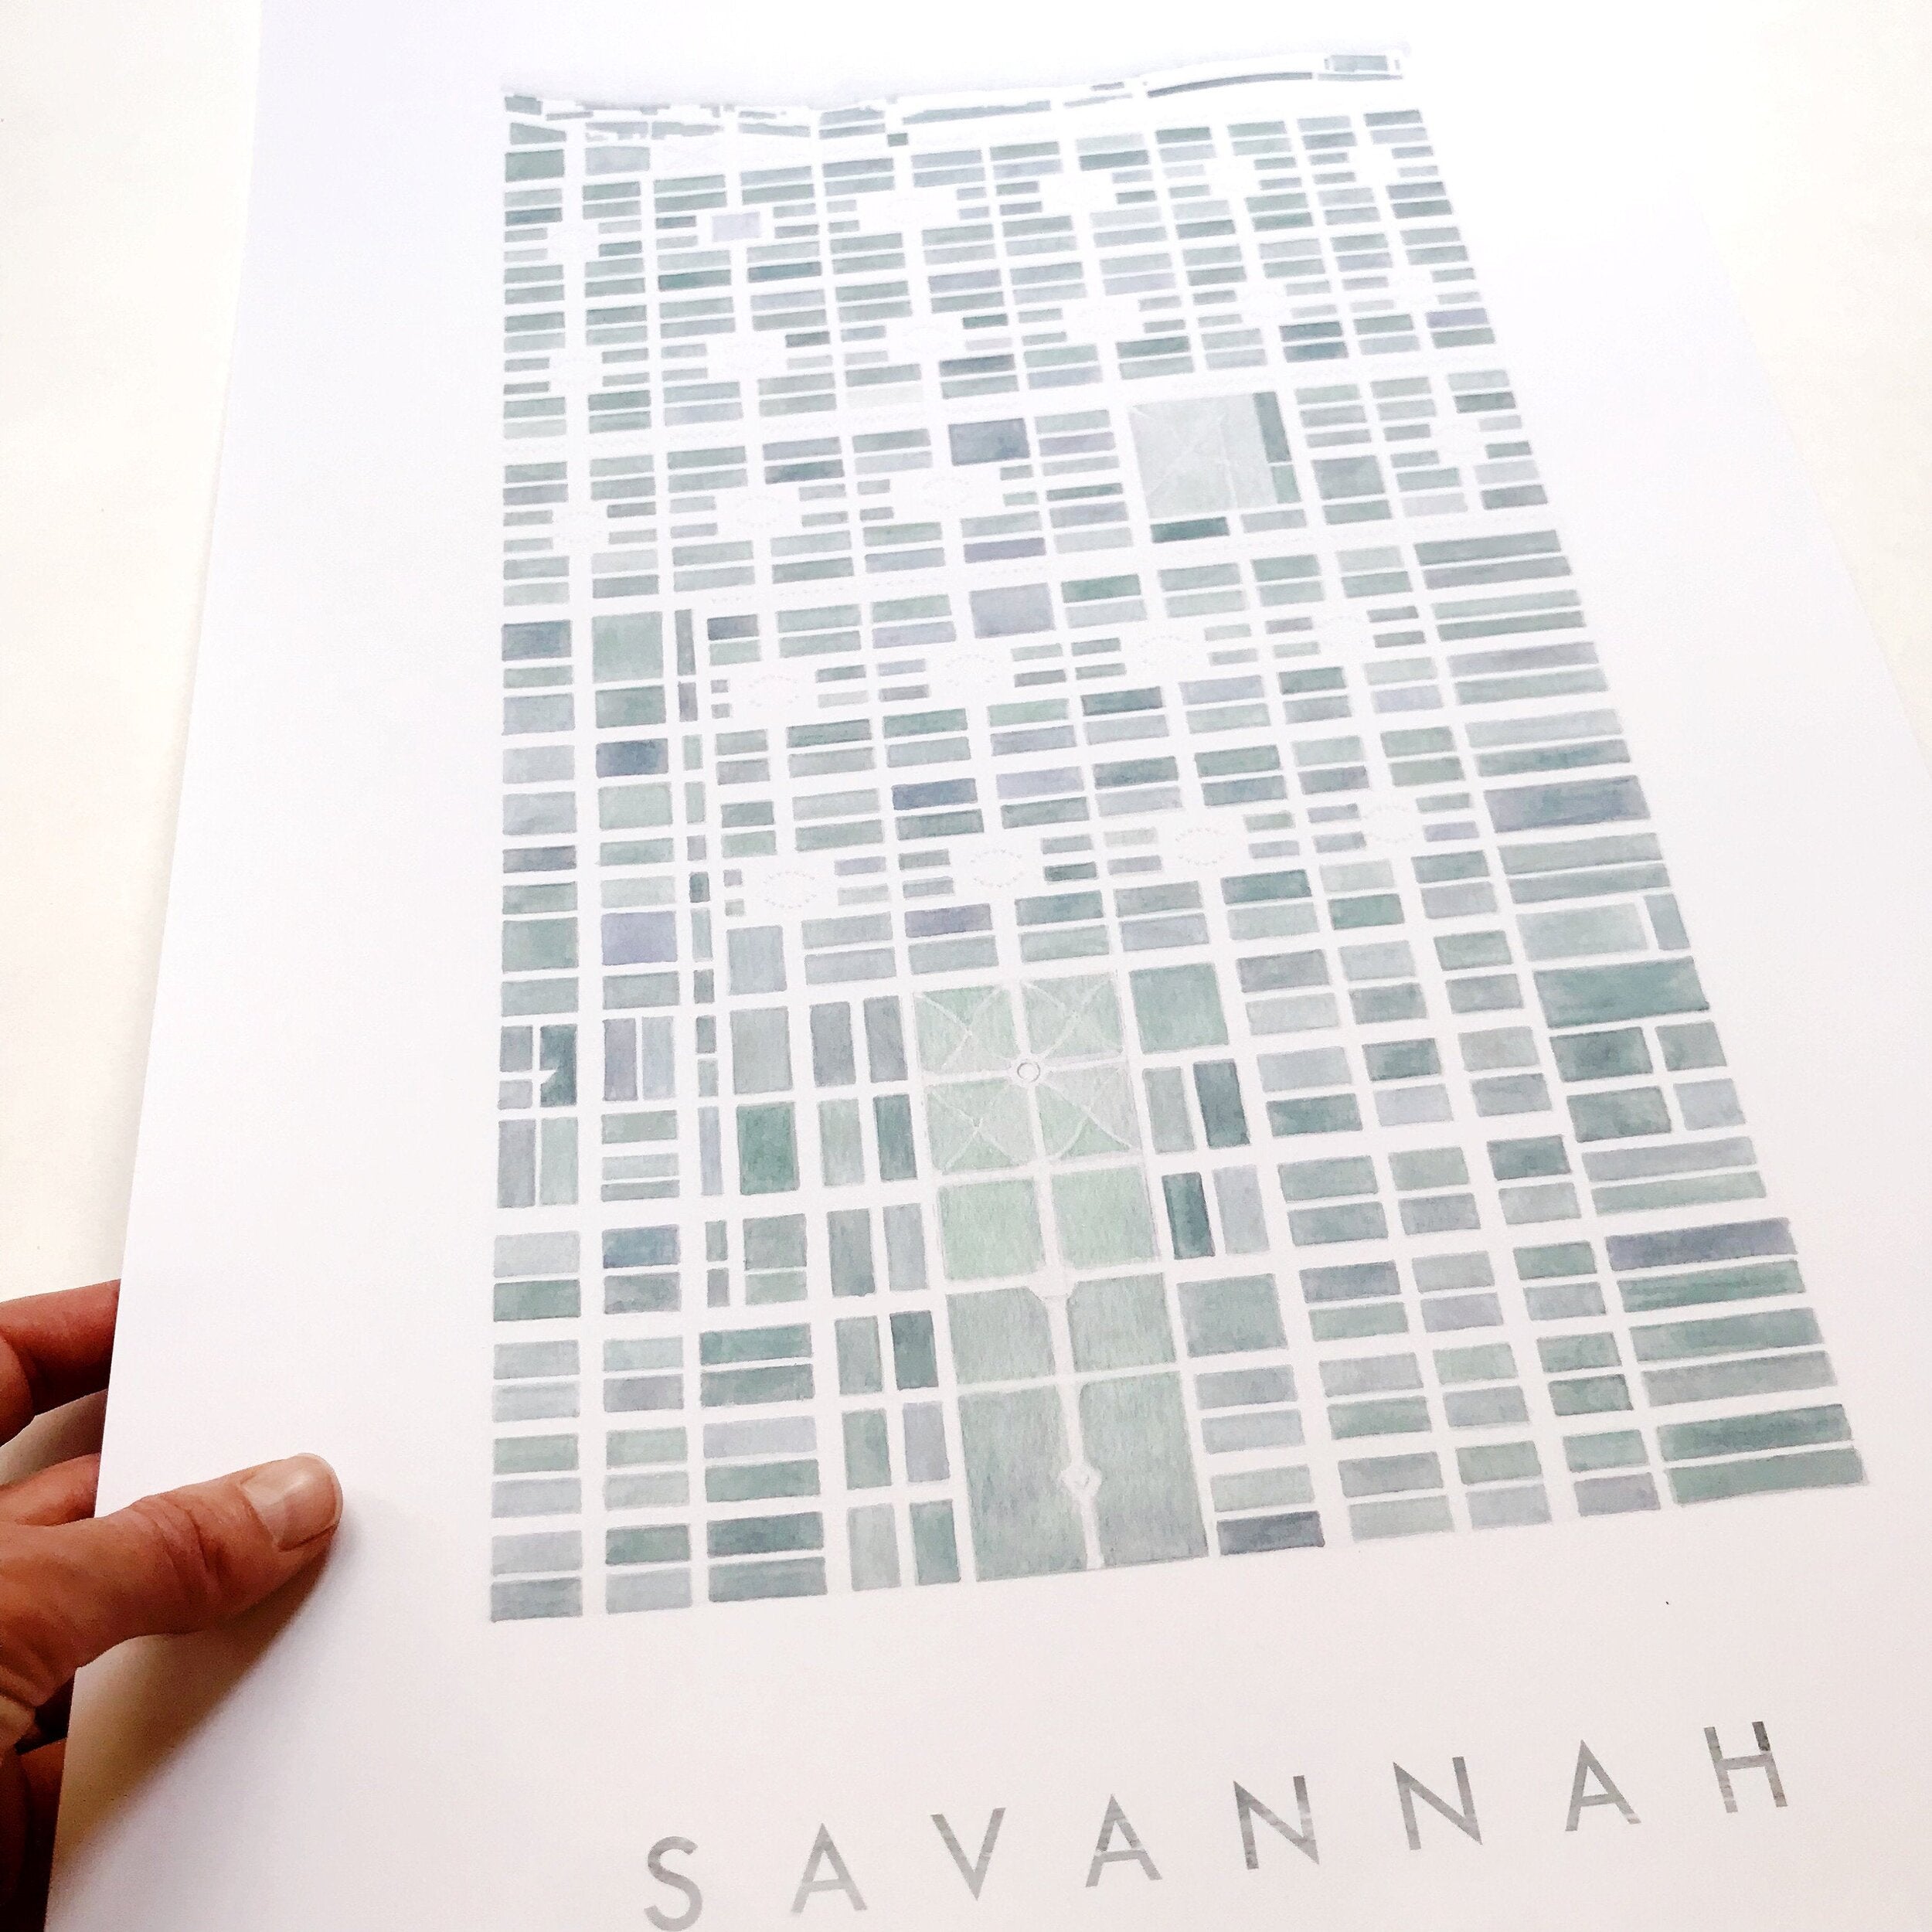 SAVANNAH Watercolor City Blocks Map: PRINT